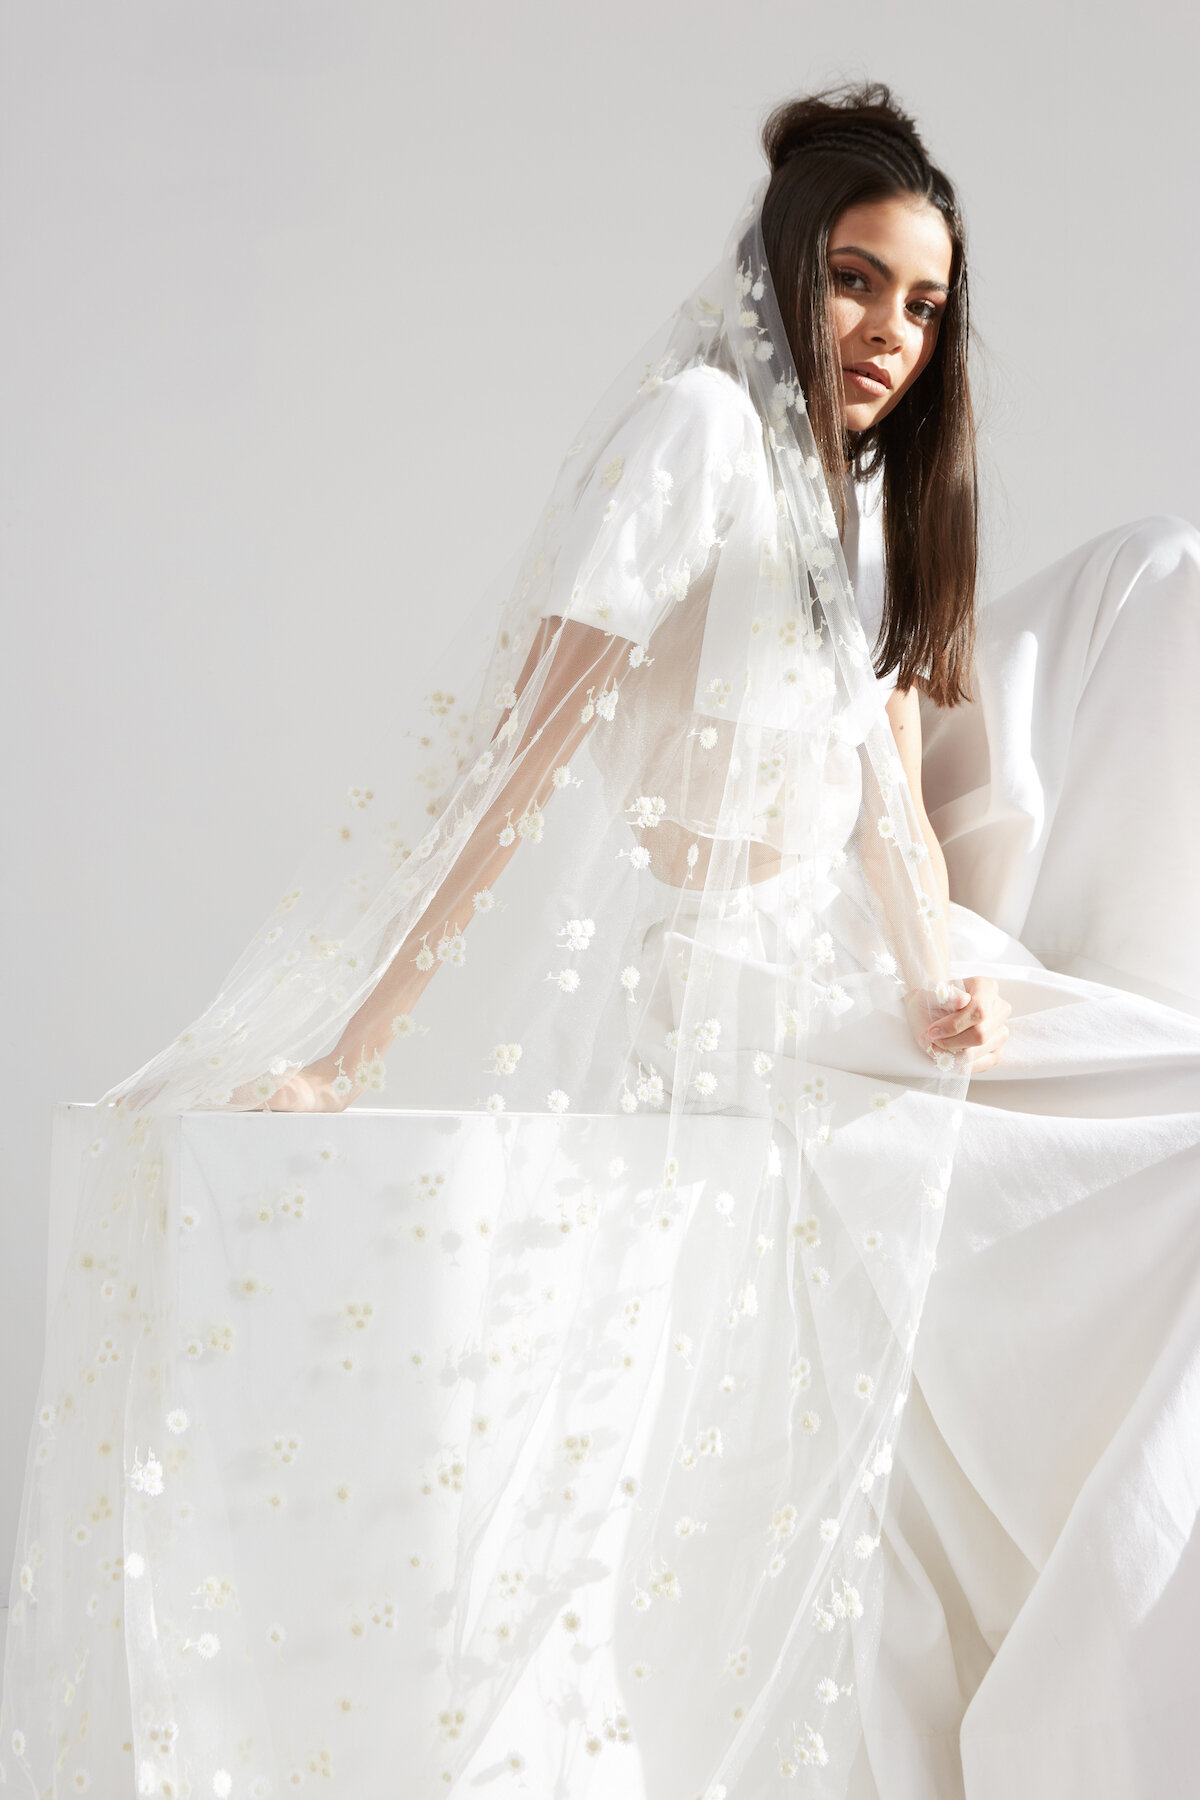 Bridal wedding veil by Am Faulkner designer and milliner